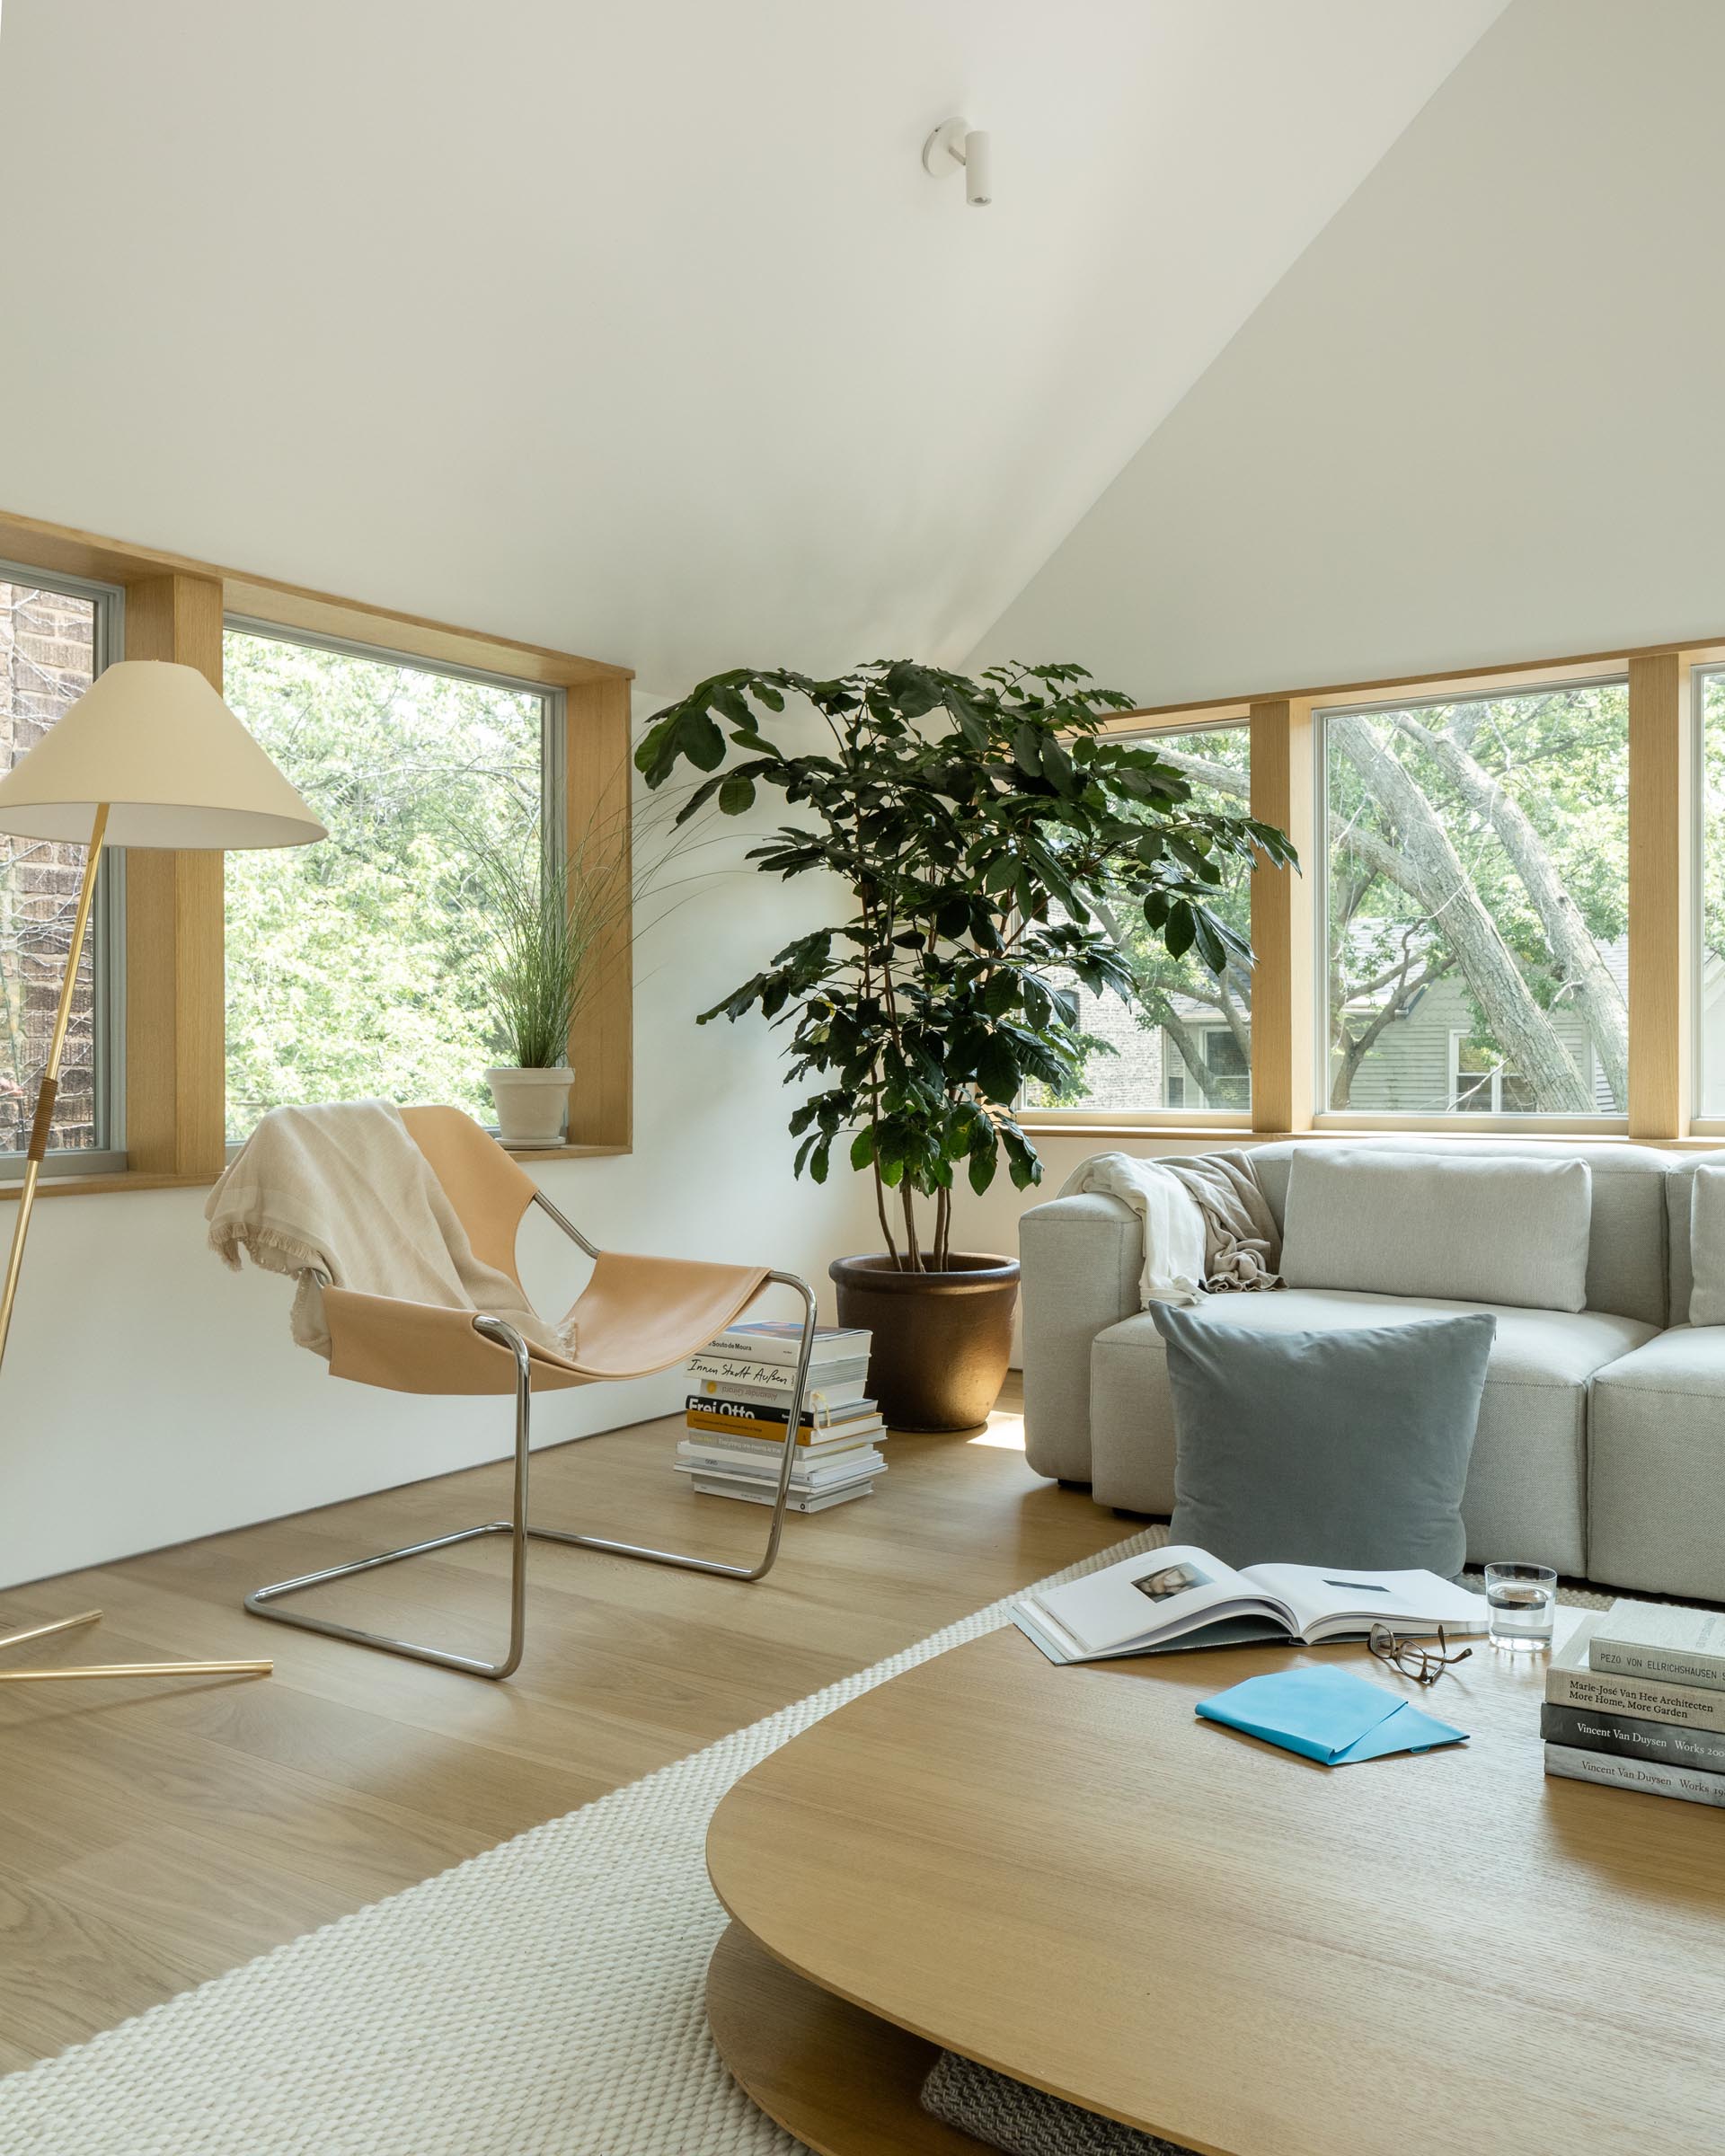 Современная гостиная со сводчатым потолком, деревянными оконными рамами и мебелью в стиле минимализма.